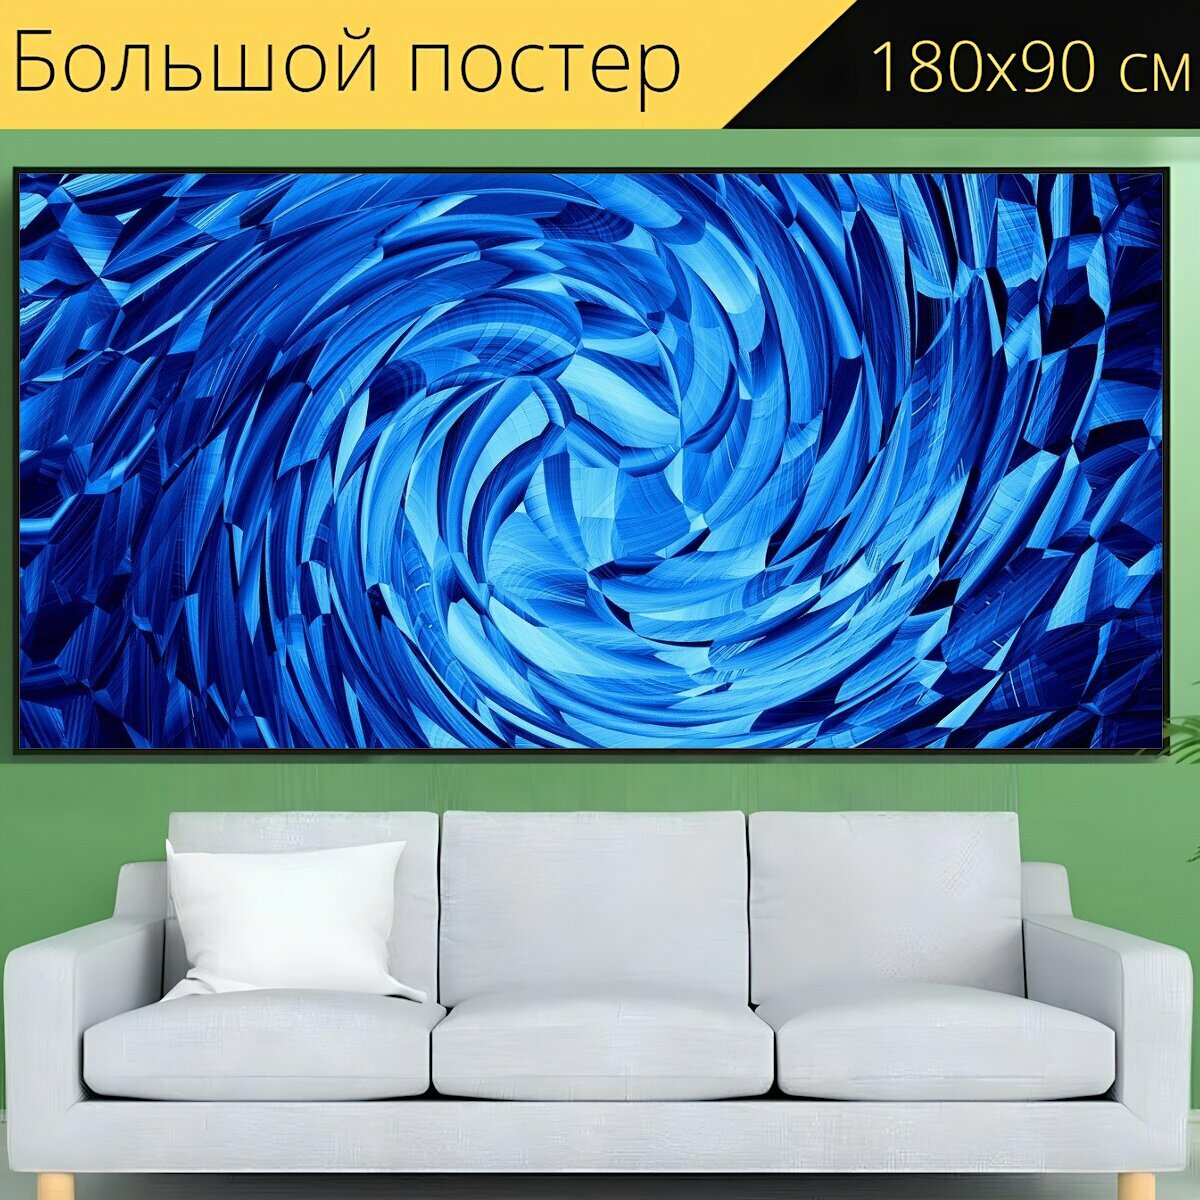 Большой постер "Водоворот, синий, белый" 180 x 90 см. для интерьера